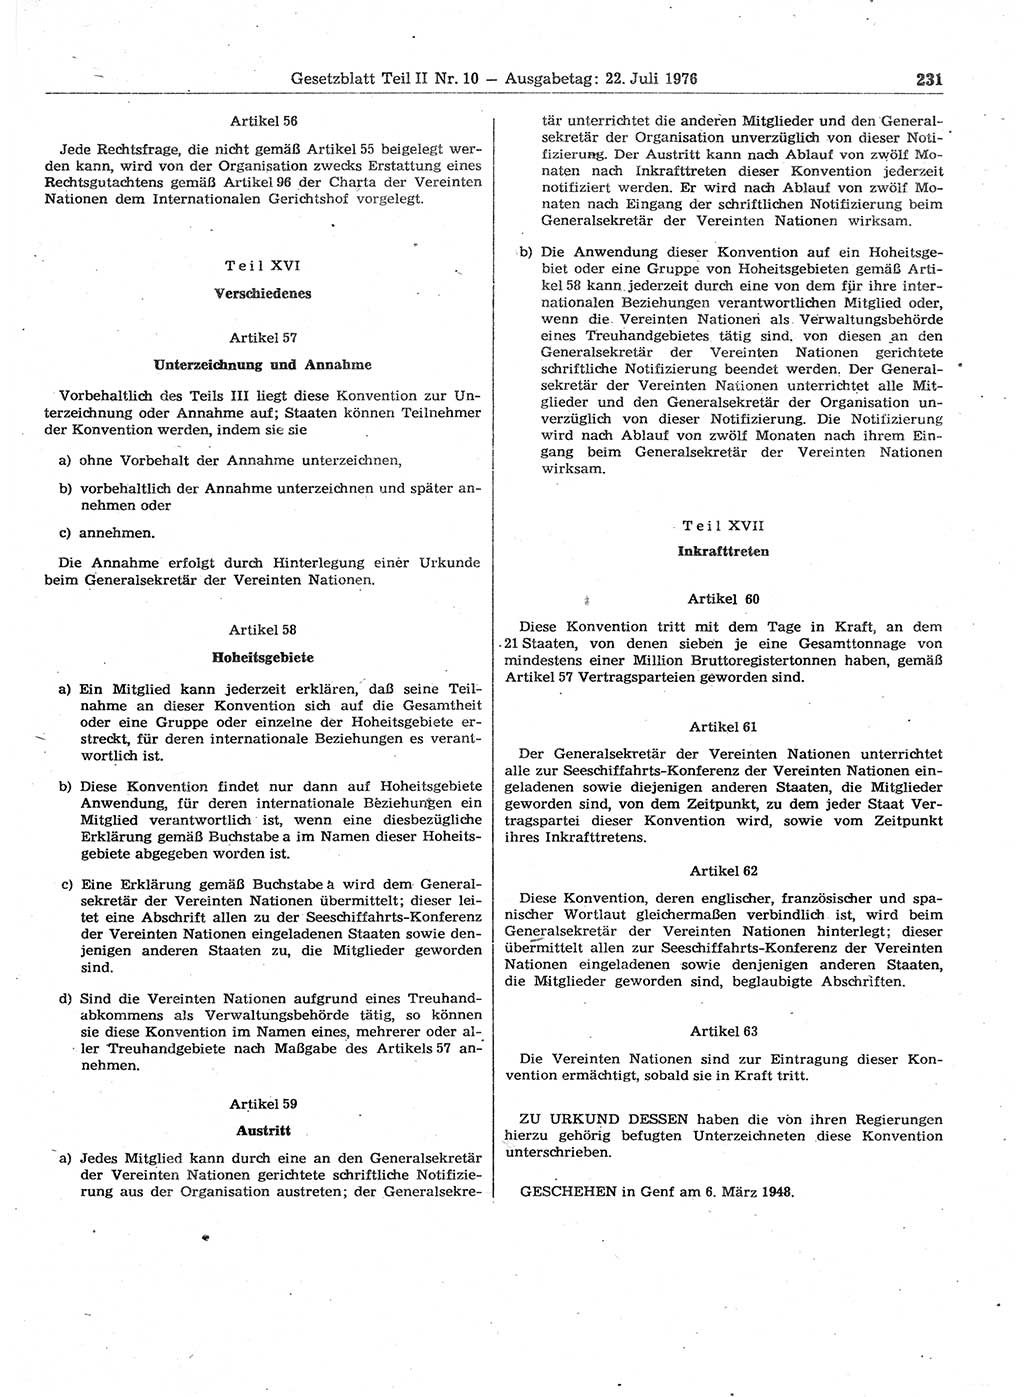 Gesetzblatt (GBl.) der Deutschen Demokratischen Republik (DDR) Teil ⅠⅠ 1976, Seite 231 (GBl. DDR ⅠⅠ 1976, S. 231)